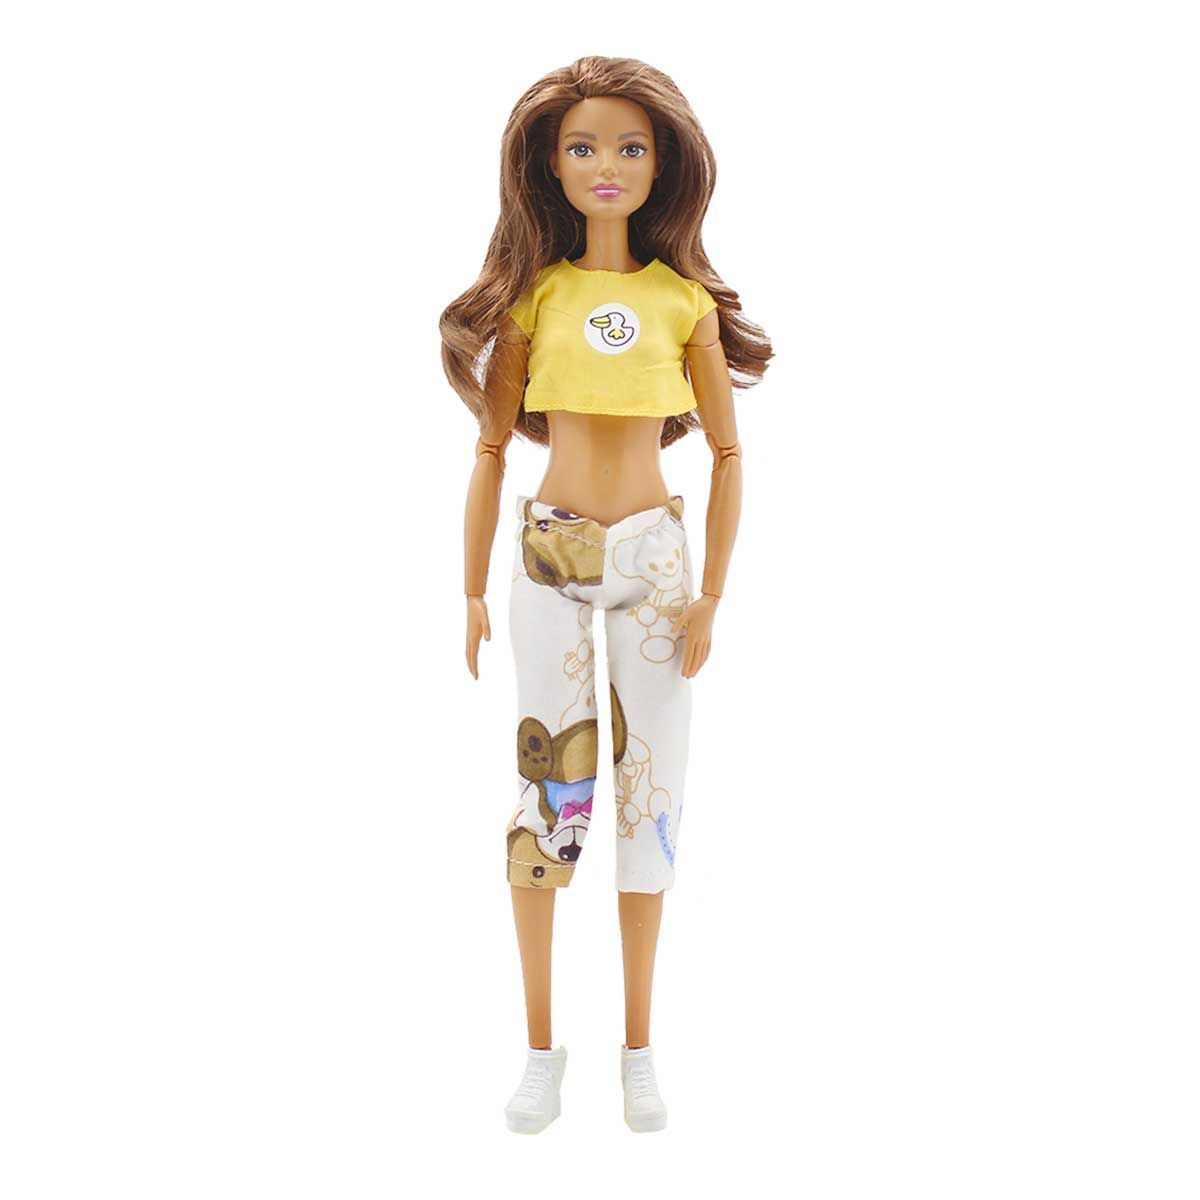 Одежда Dolls Accessories для Барби и кукол ростом 29 см Пижама